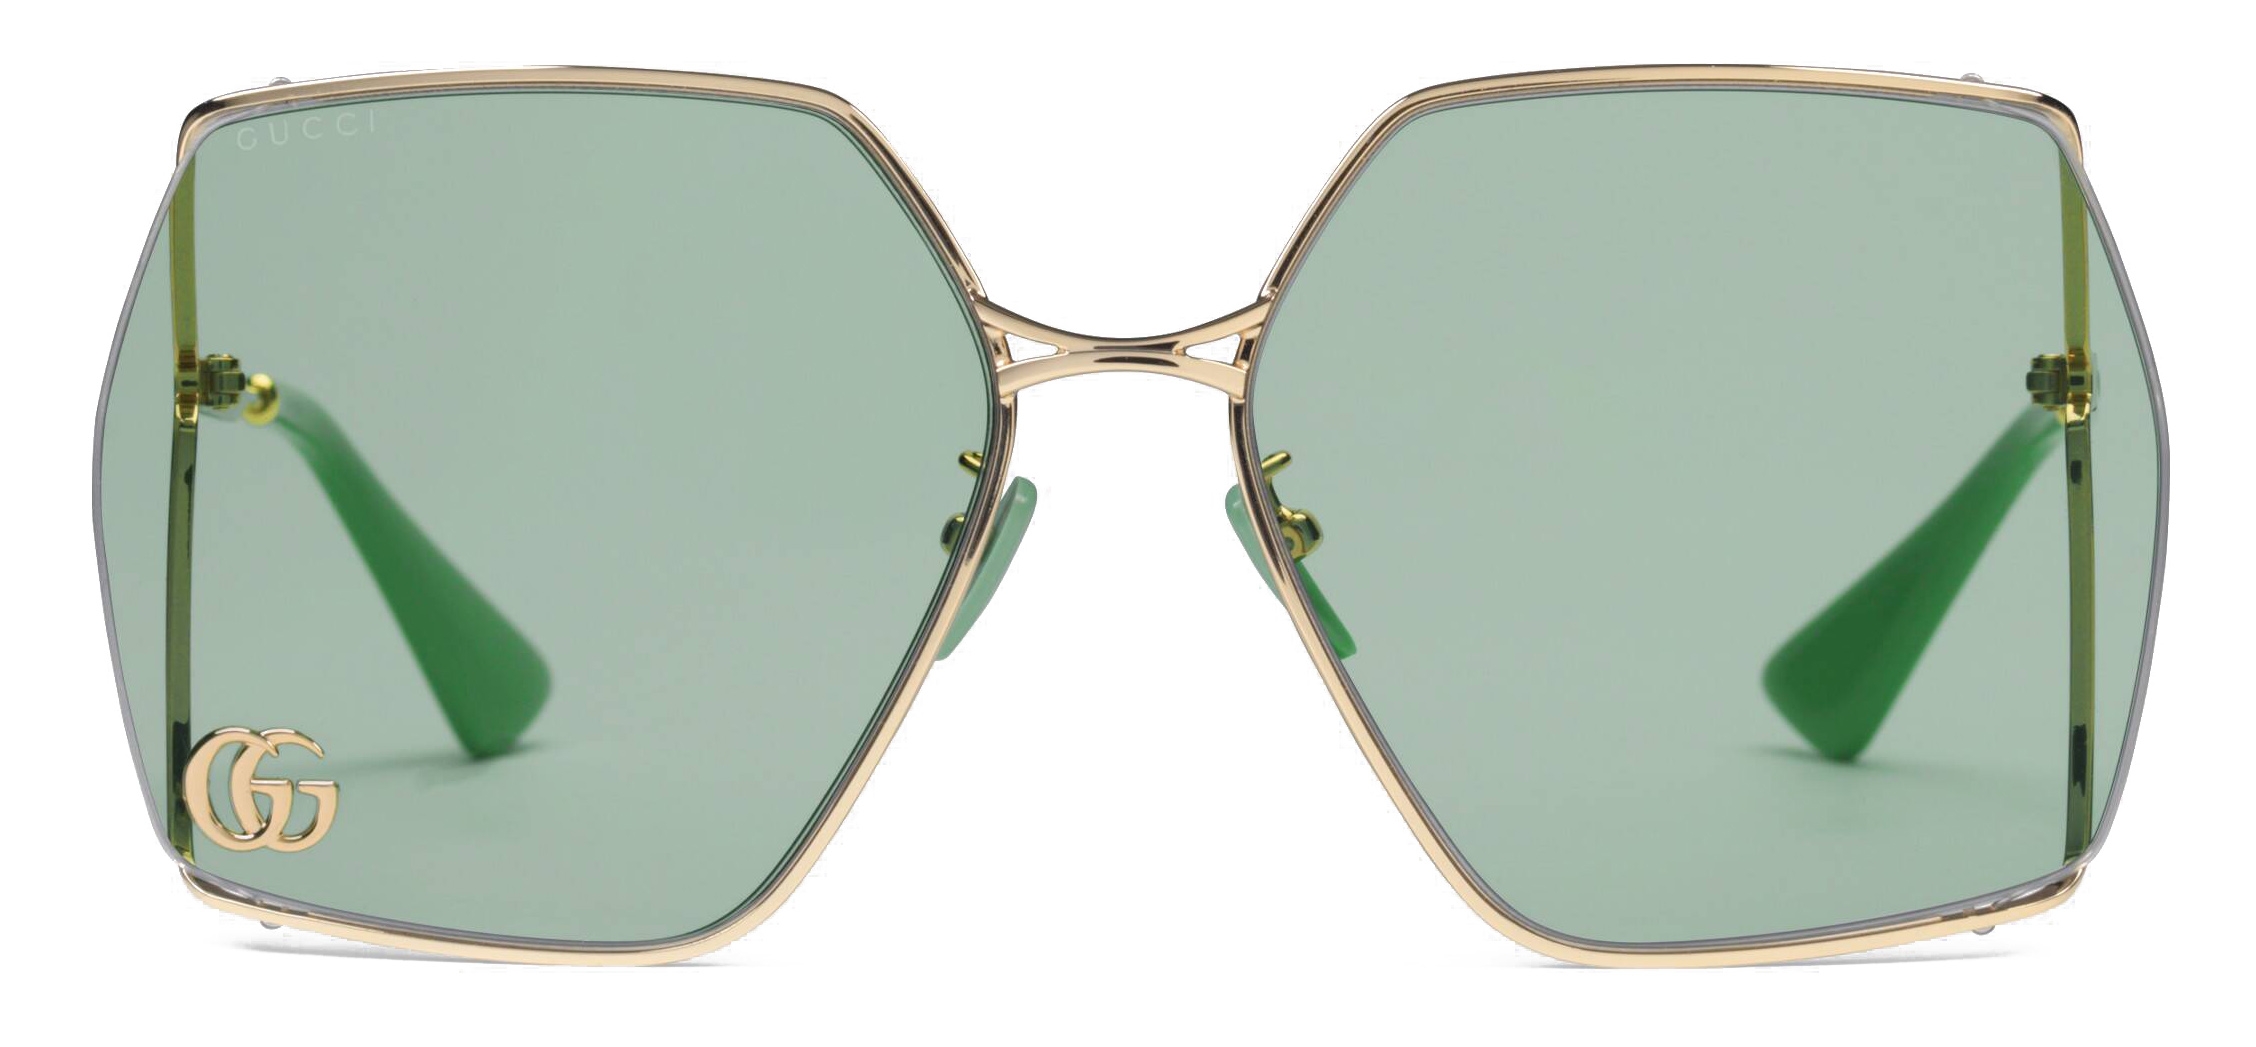 gucci sunglasses latest collection